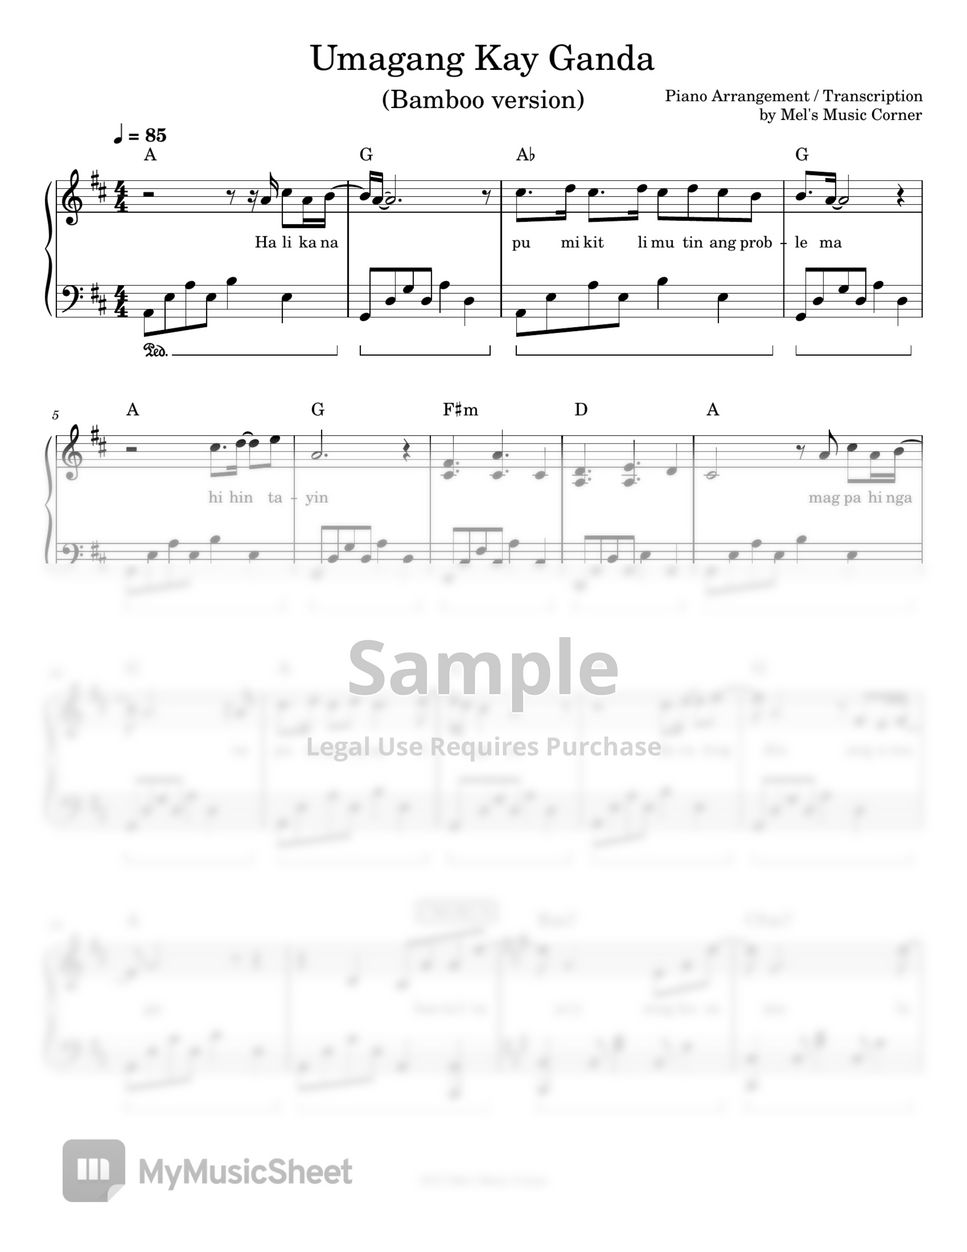 Ray-An Fuentes & Tillie Moreno - Umagang Kay Ganda (piano sheet music) by Mel's Music Corner